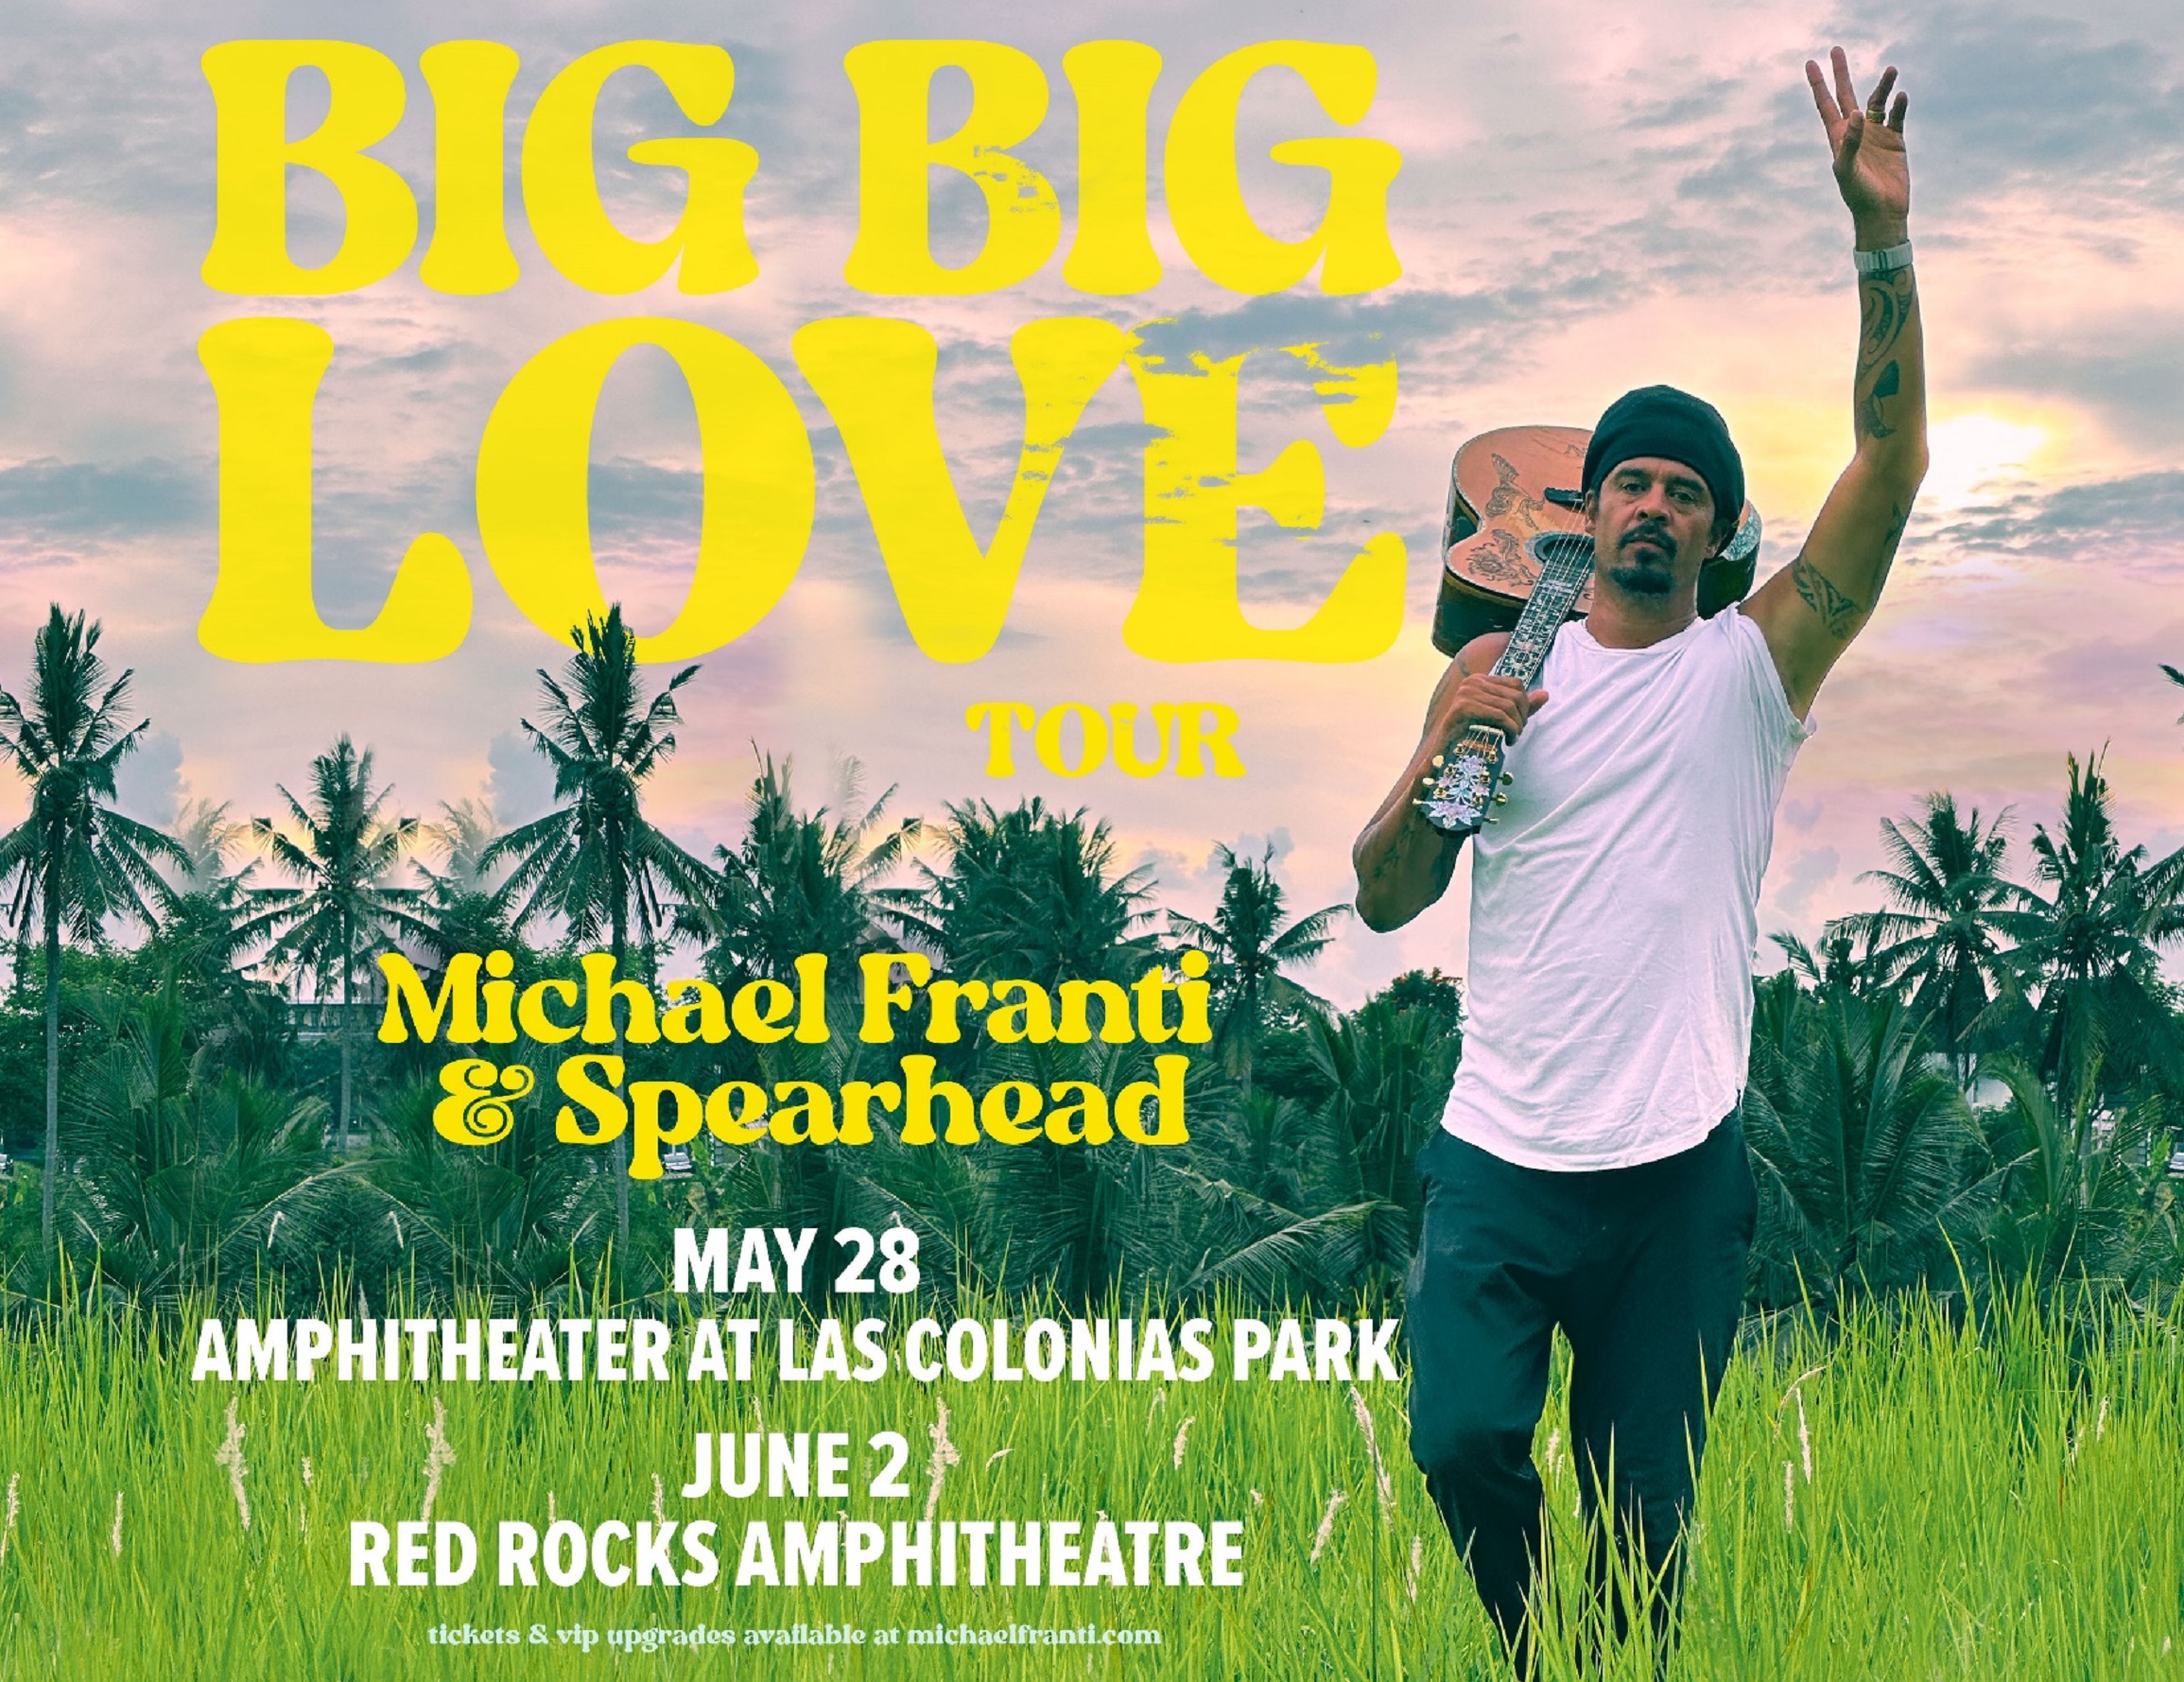 MICHAEL FRANTI & SPEARHEAD’S BIG BIG LOVE TOUR 2023